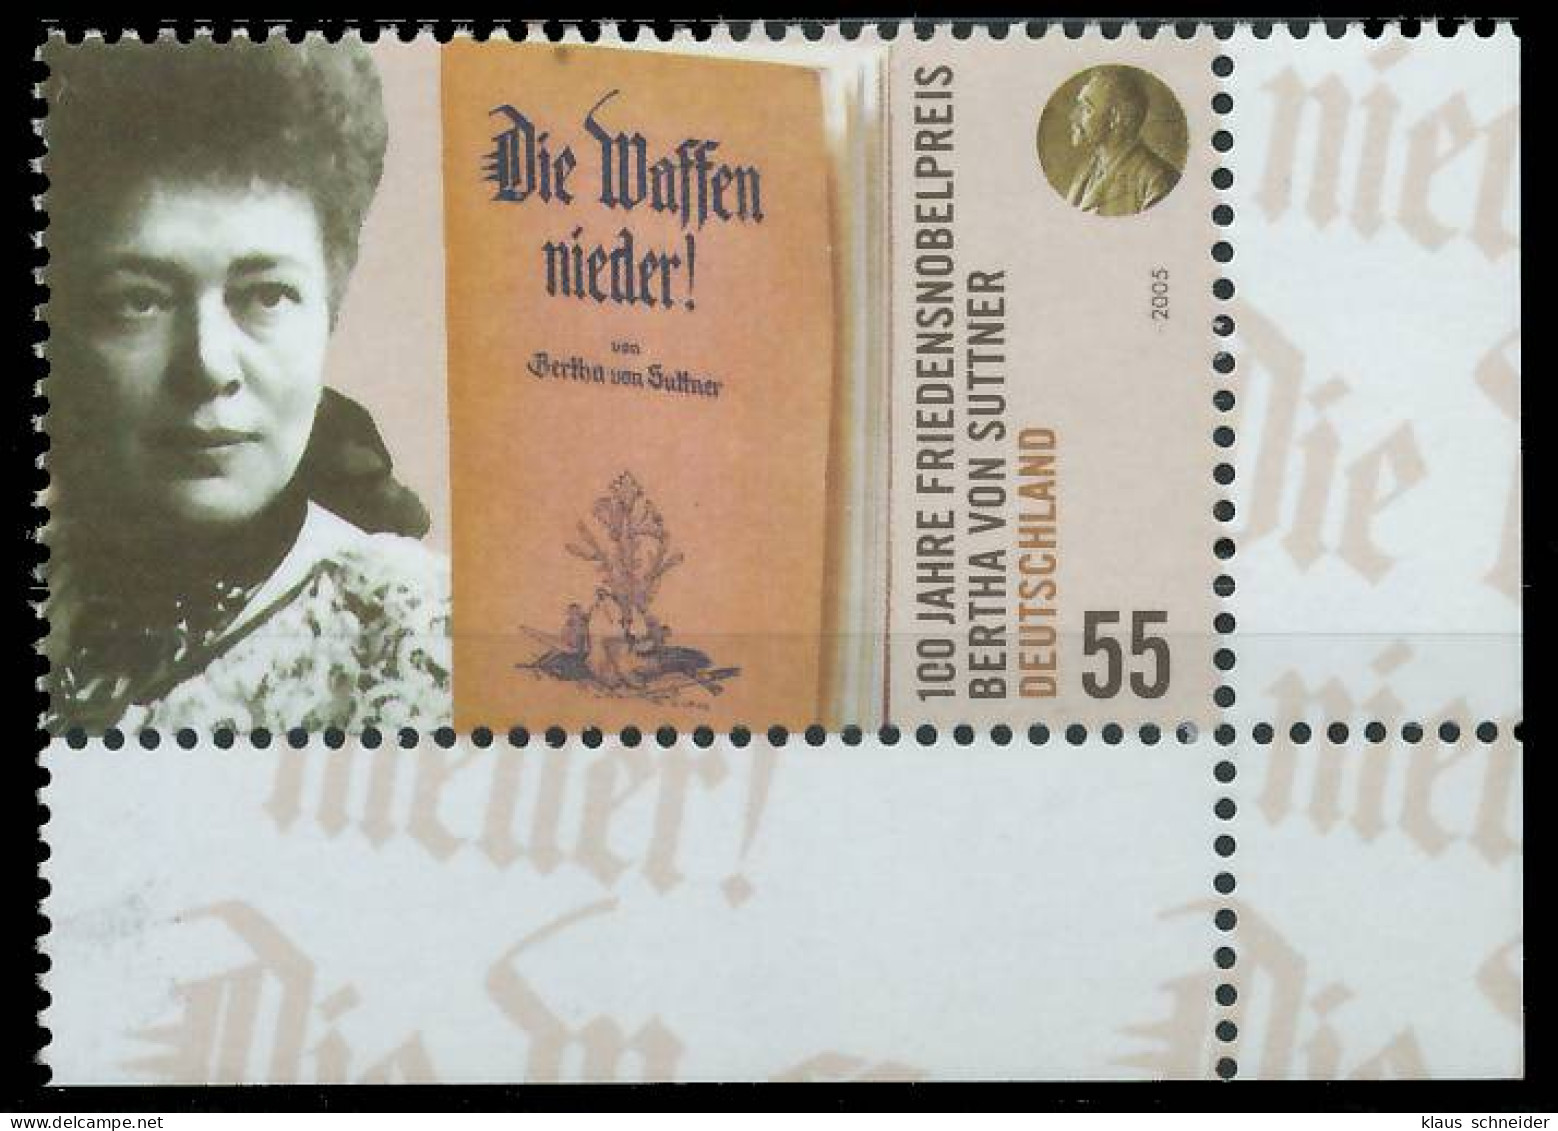 BRD BUND 2005 Nr 2495 Postfrisch ECKE-URE X33B736 - Unused Stamps